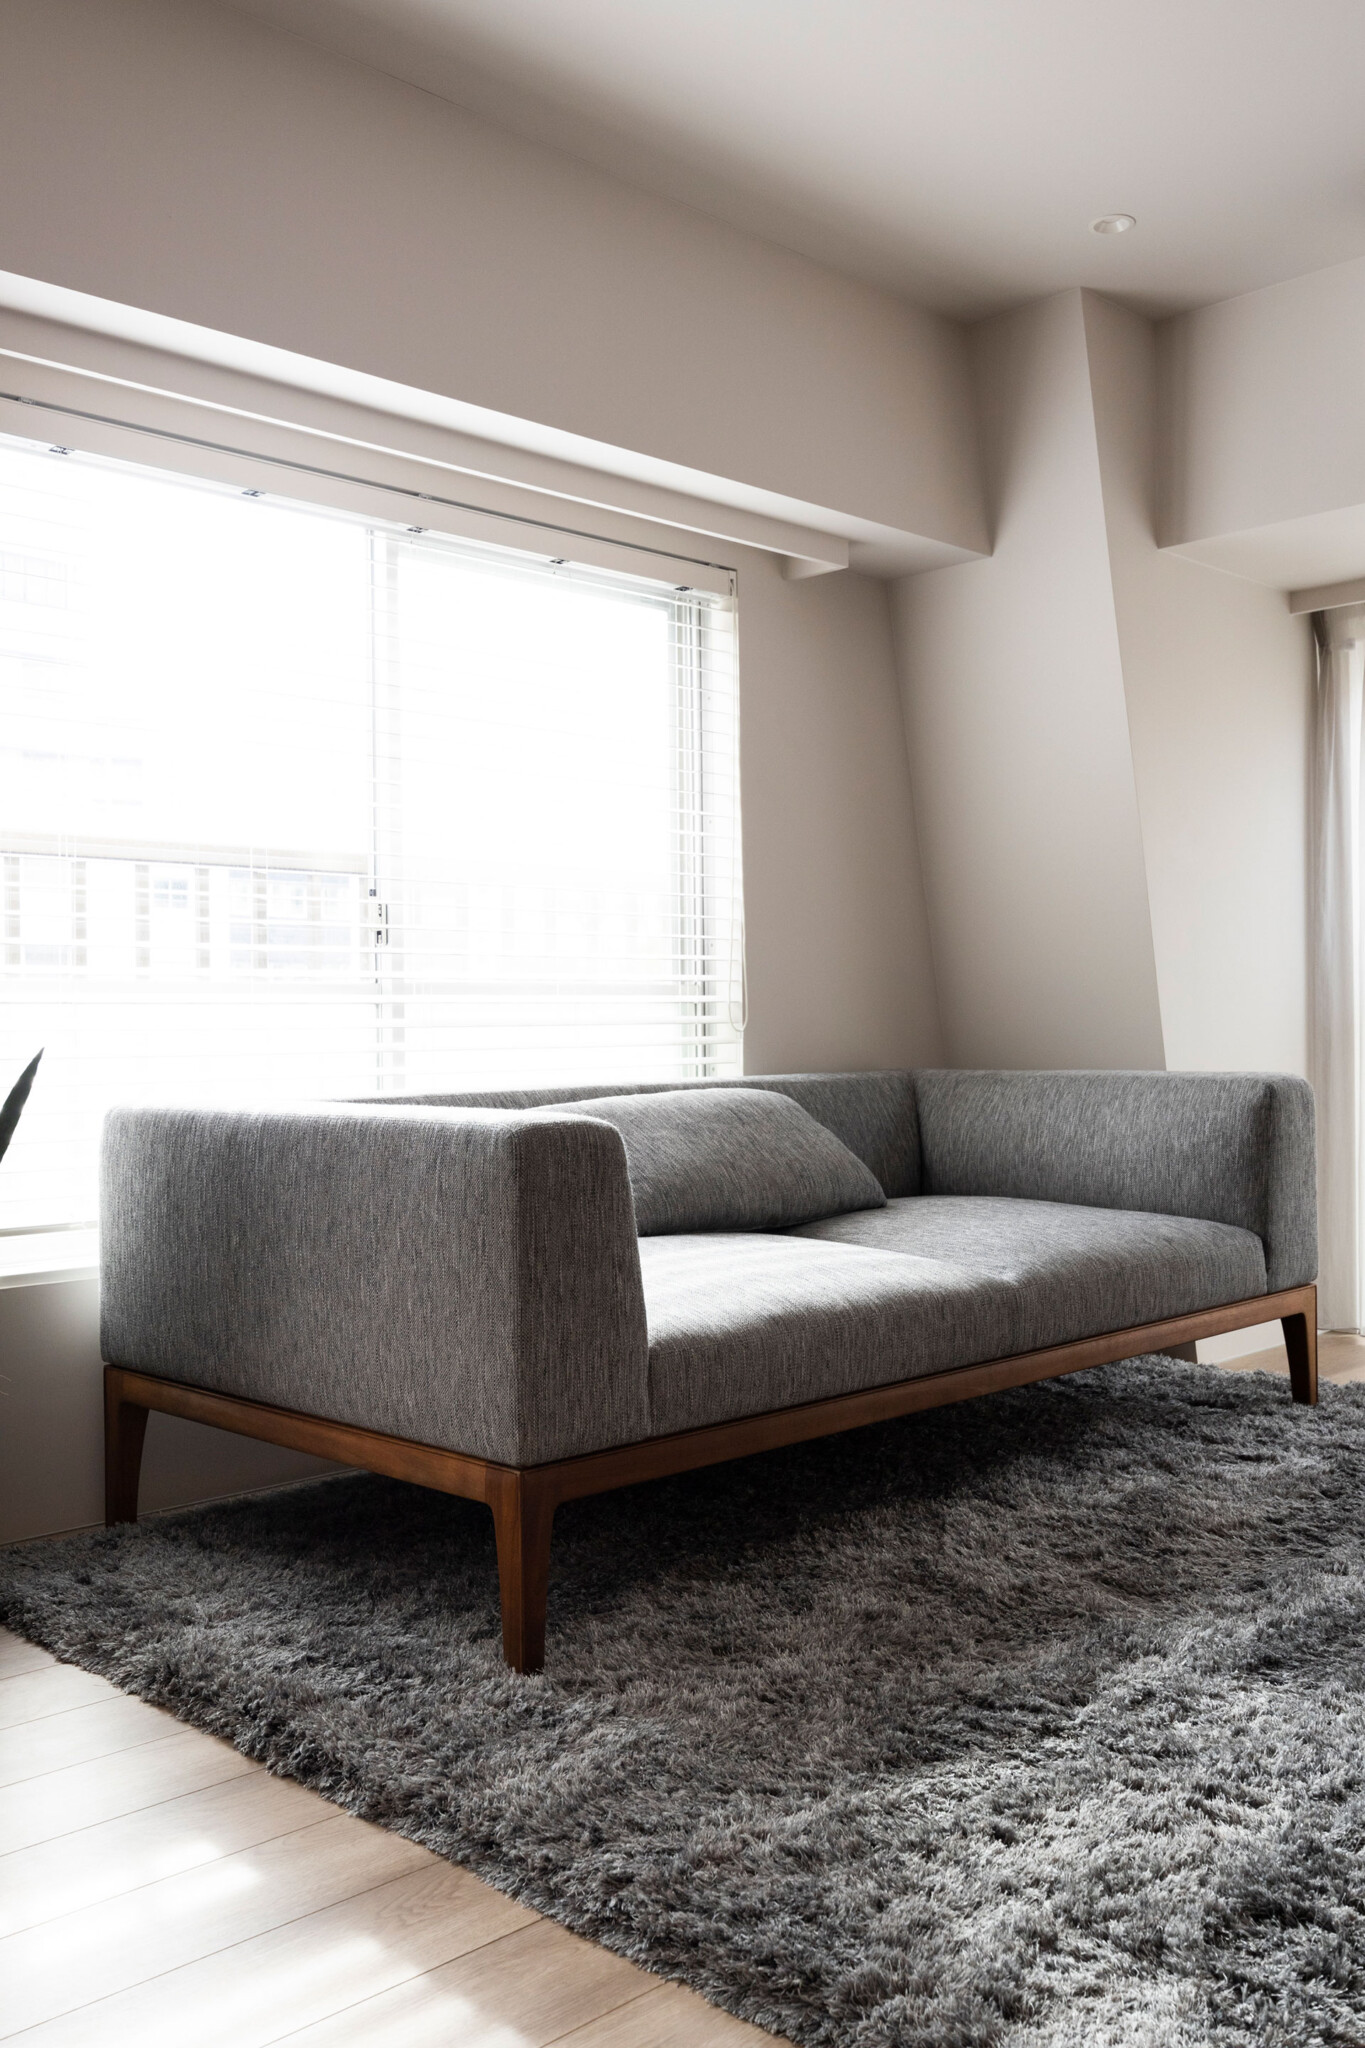 ゆったりしたソファに、毛足の長いラグが居心地のよさを感じさせる。希望があれば家具も購入可能。